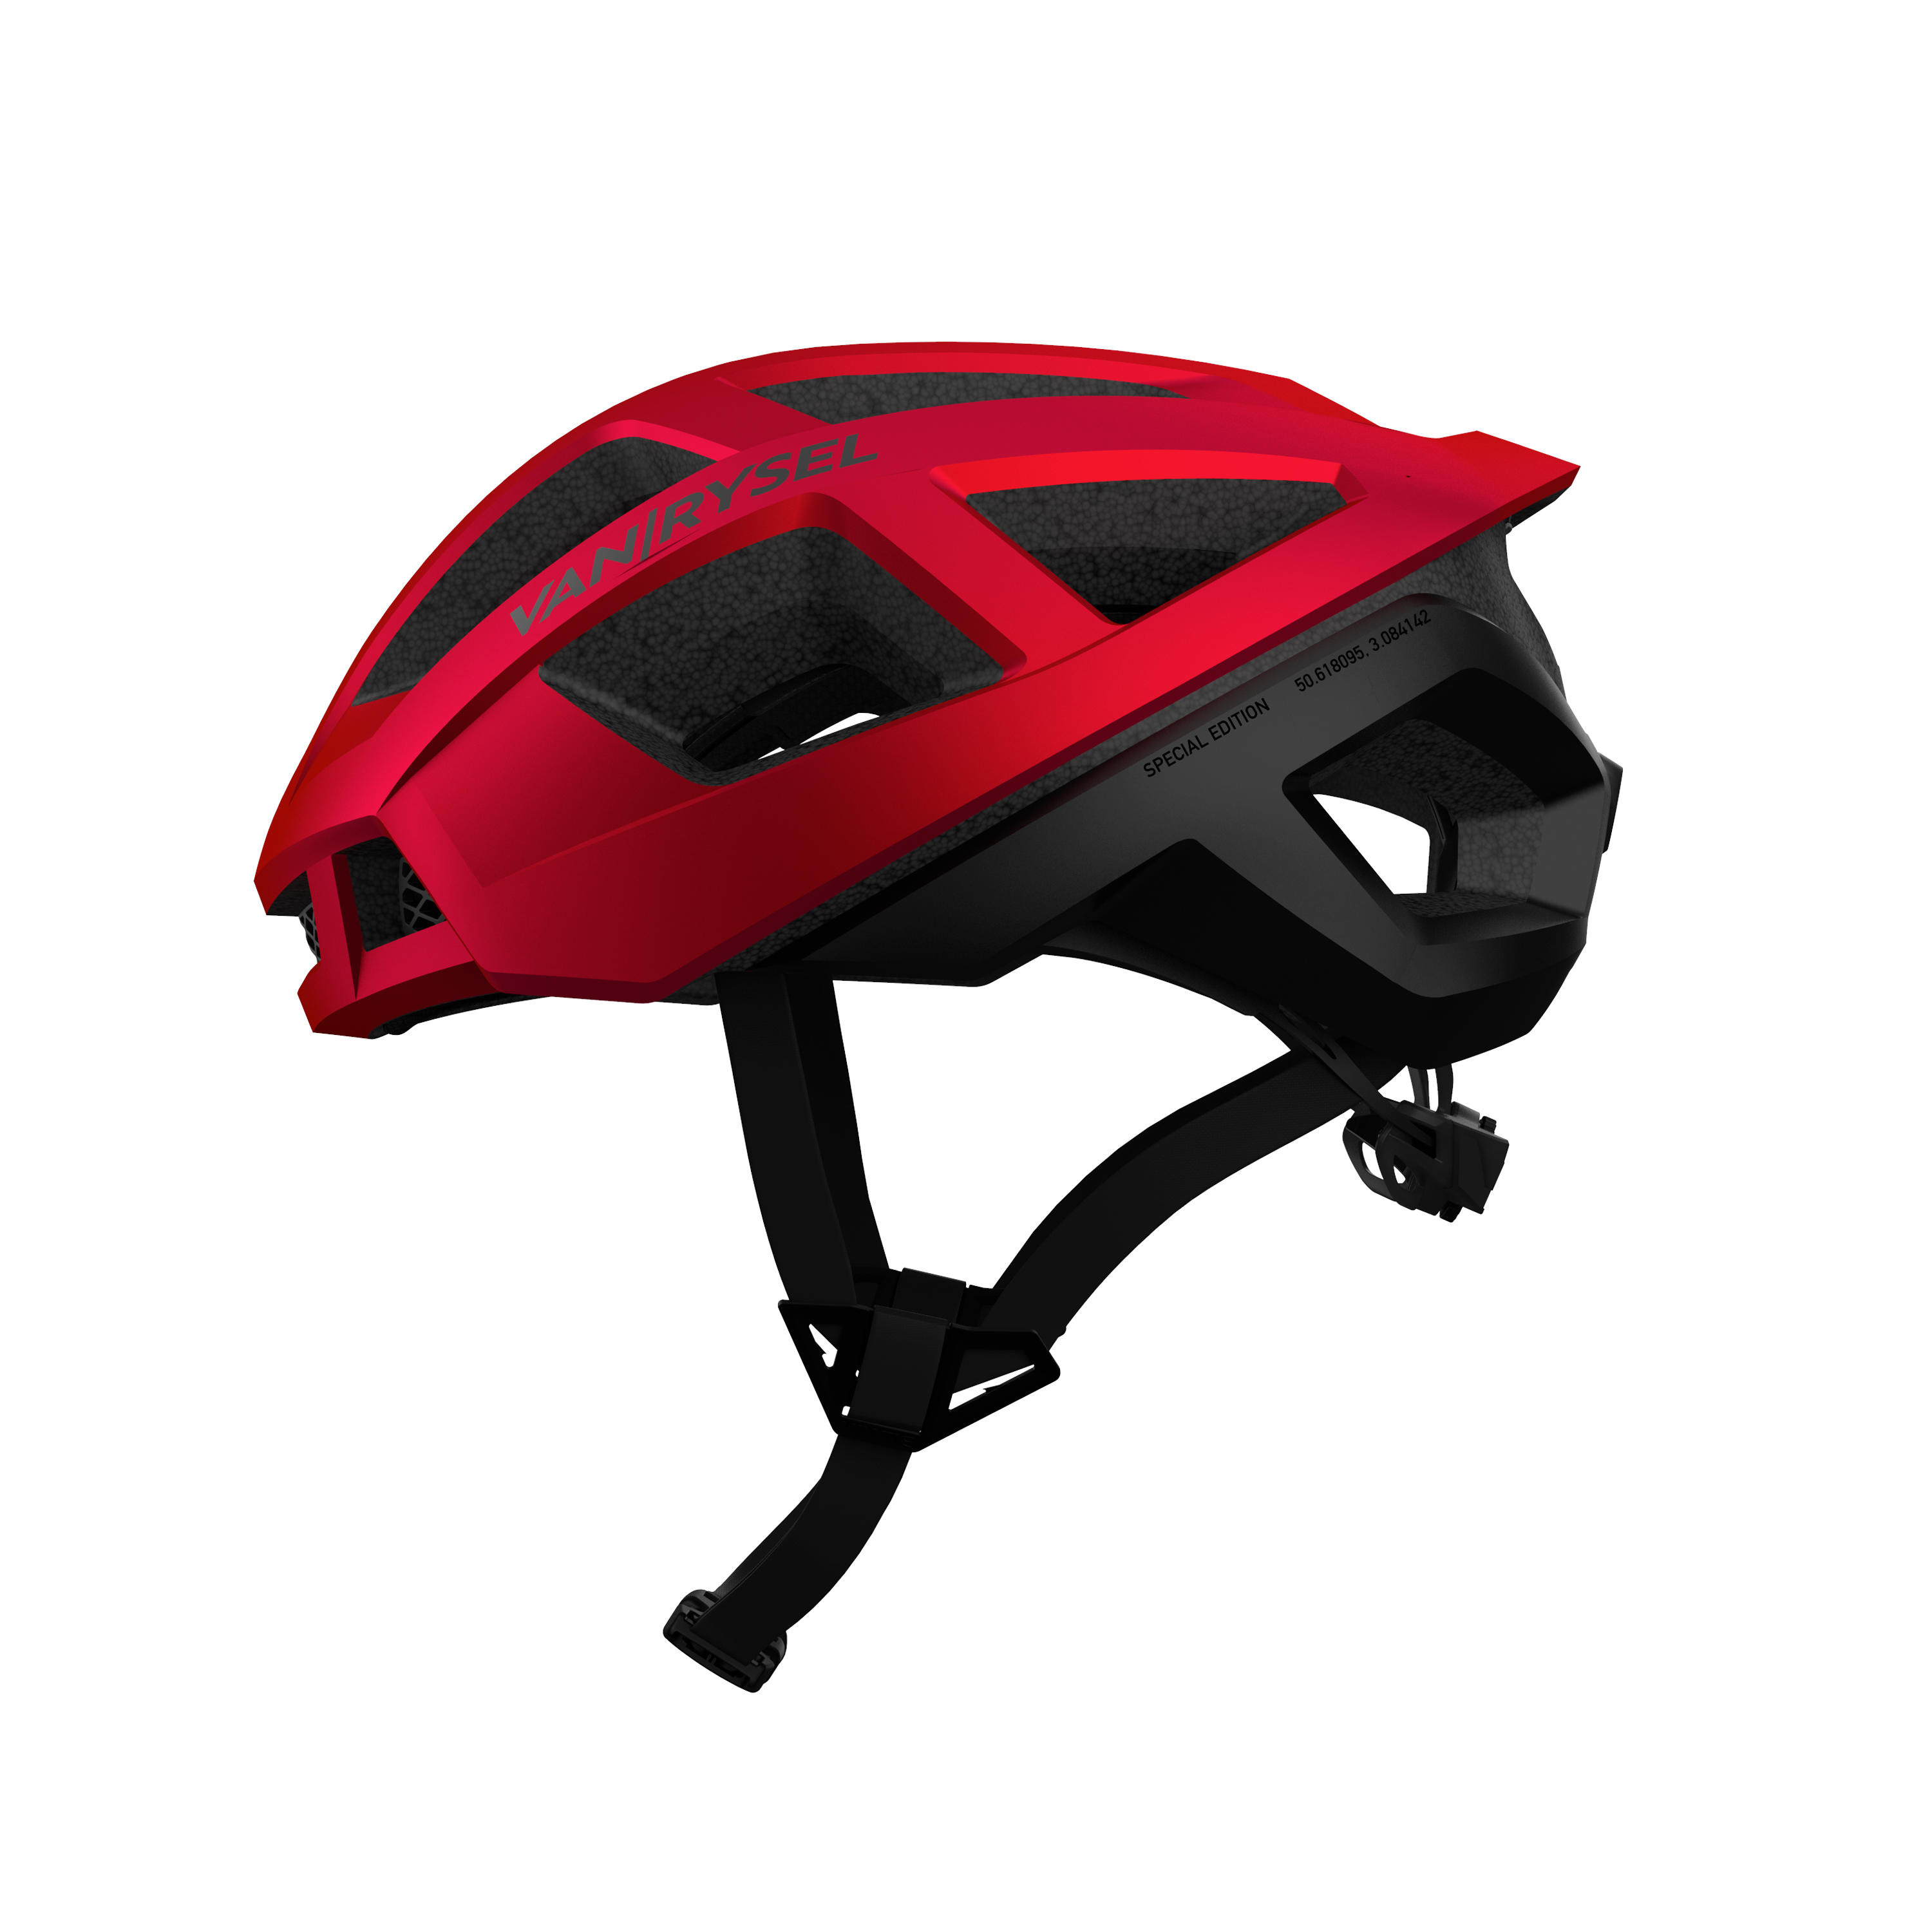 VAN RYSEL RoadR 900 Road Cycling Helmet - Red